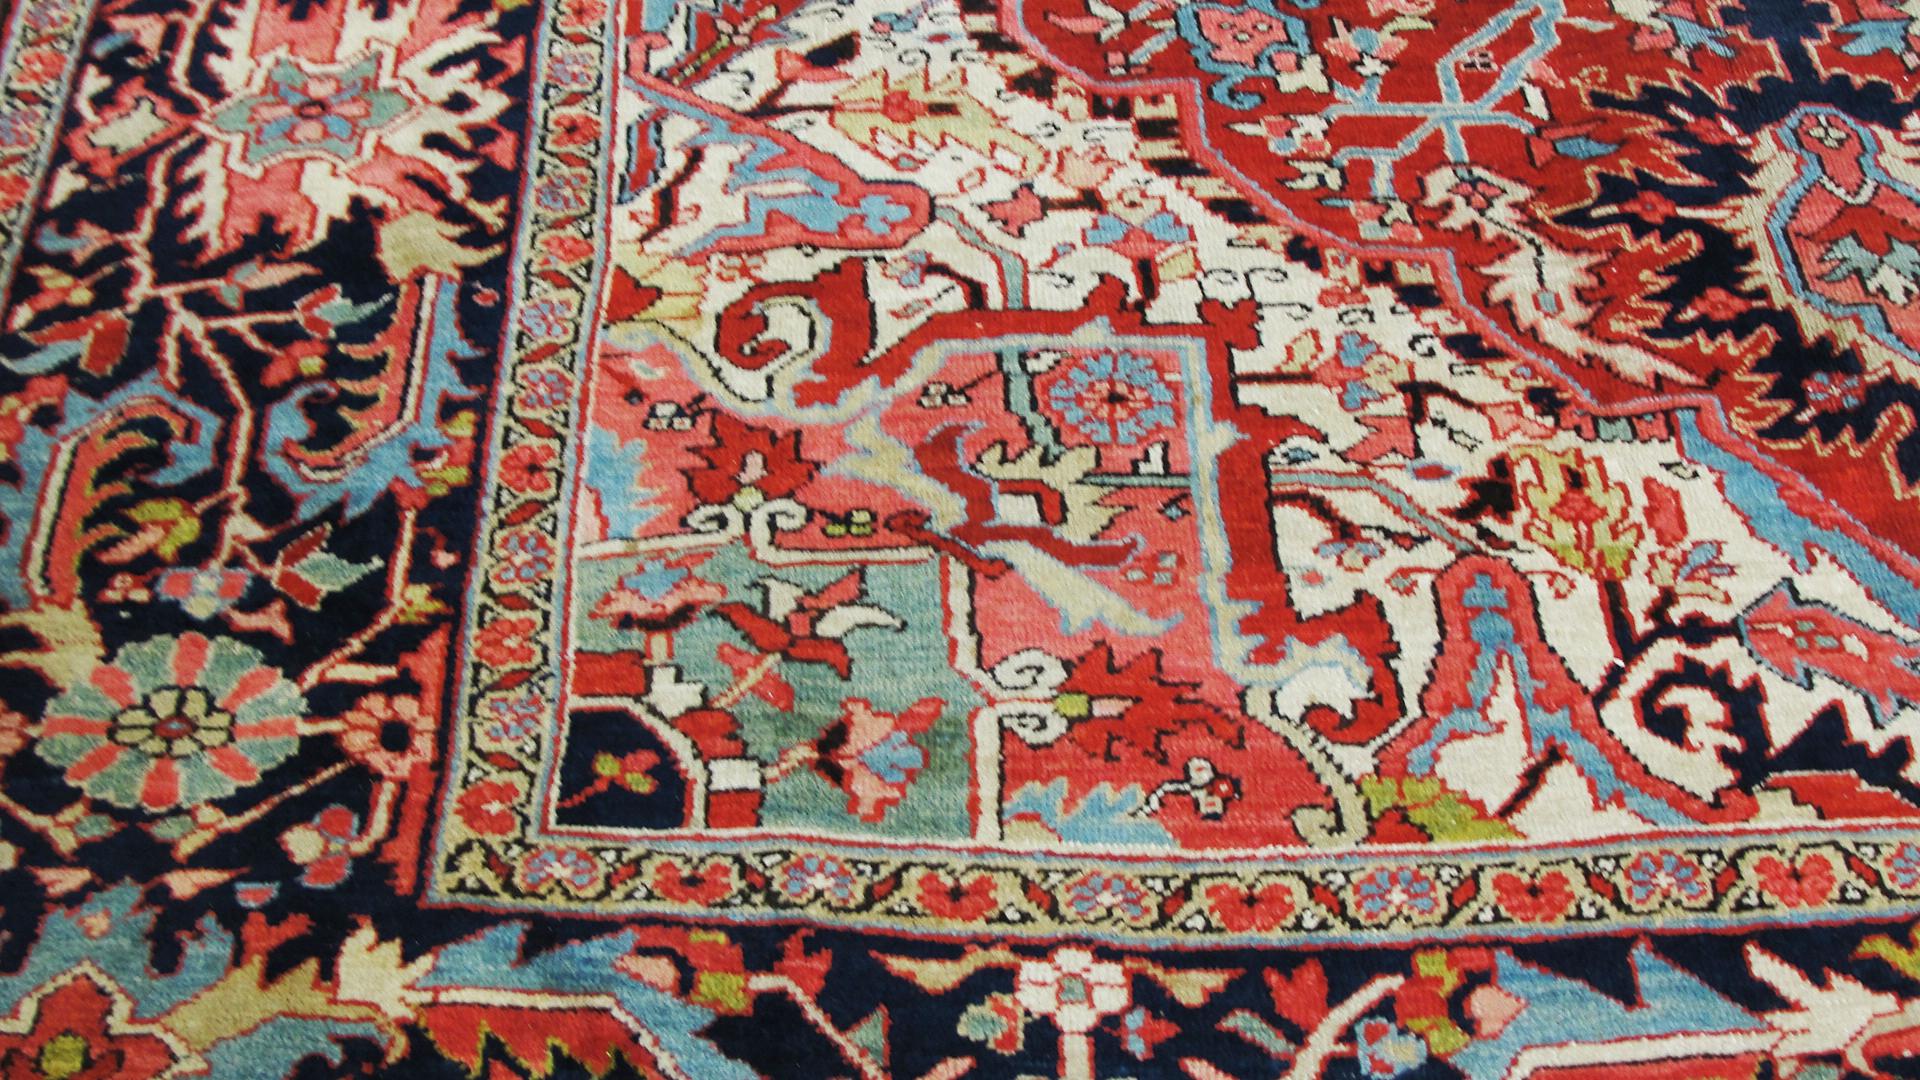 20th Century Persian Heriz Carpet, Incredible Colors